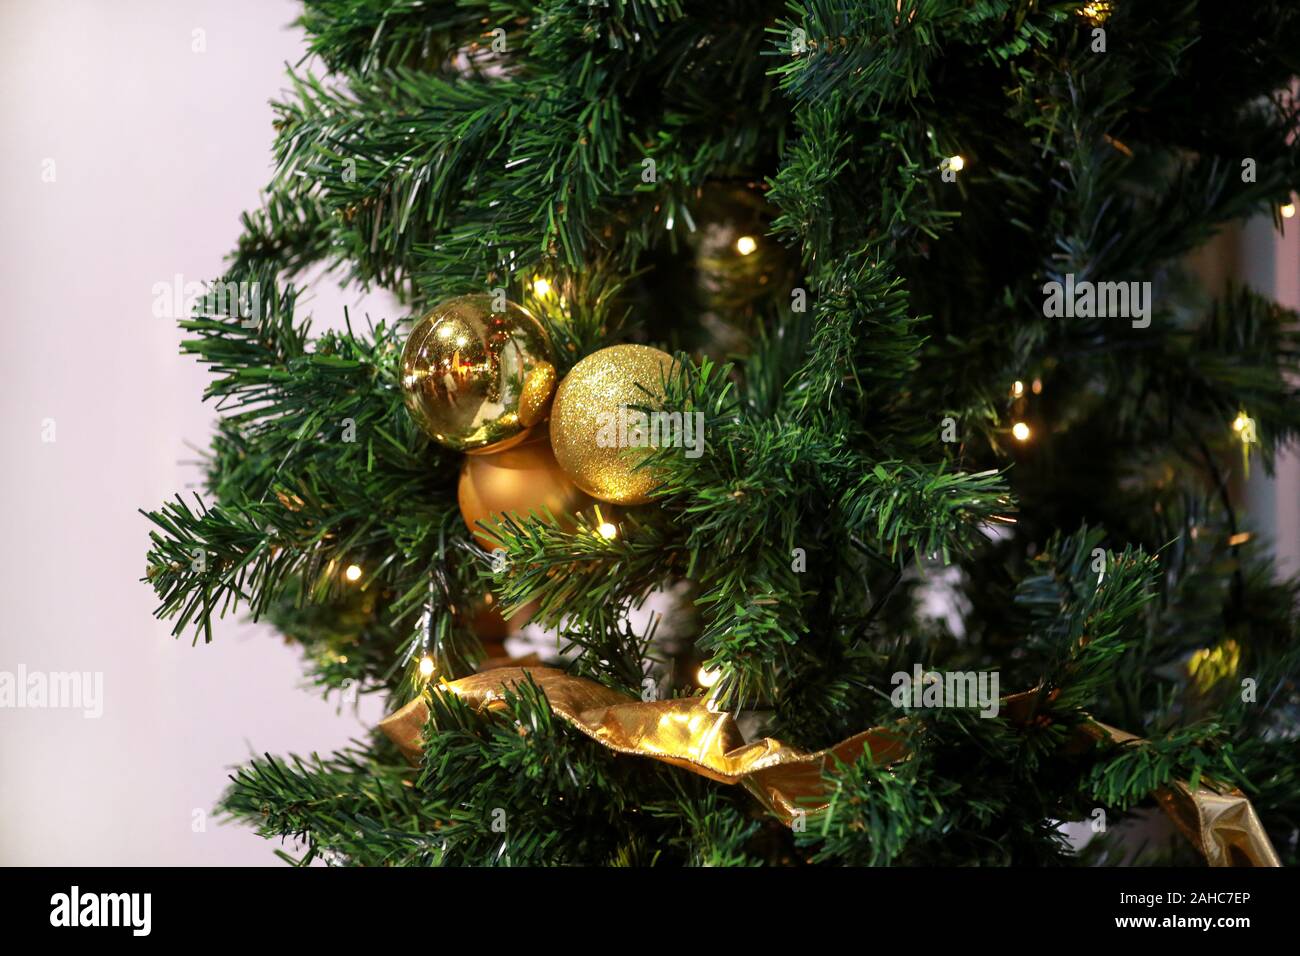 Traditionell dekorierte Christbaumkugeln hängt an grüne Zweige Baum der Kiefer. Helles gold Kugeln am Weihnachtsbaum Tanne oder mit string Reis Glühlampen Fichte. Stockfoto